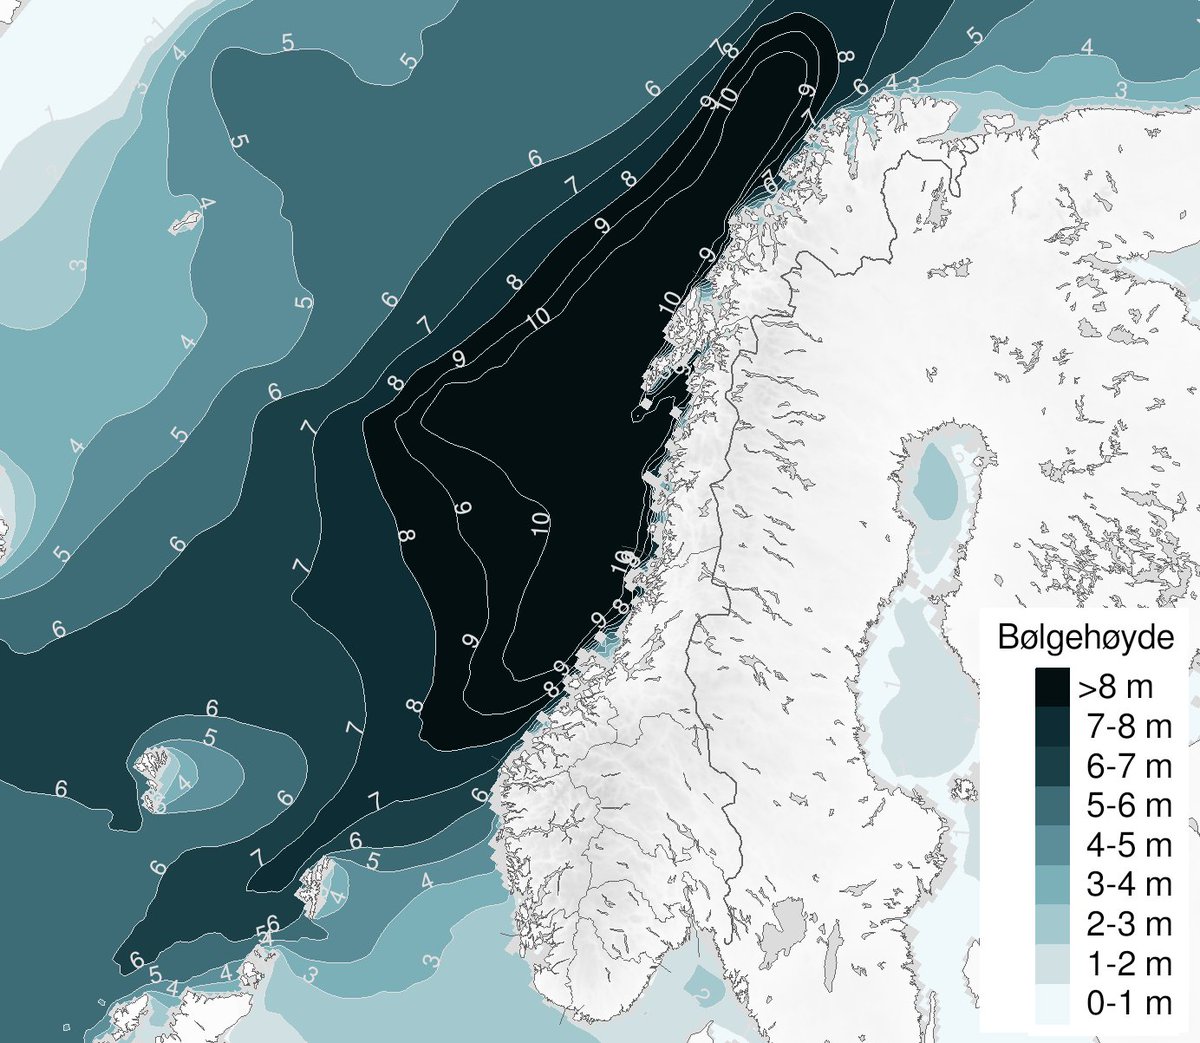 Den kraftige vinden som kommer inn i Nord-Norge i løpet av søndagen gir svært høye bølger fra Stadt til Nordkapp 🌊 Enkelte steder kan det komme opp i hele 10 meter høye bølger 😱 ⛵